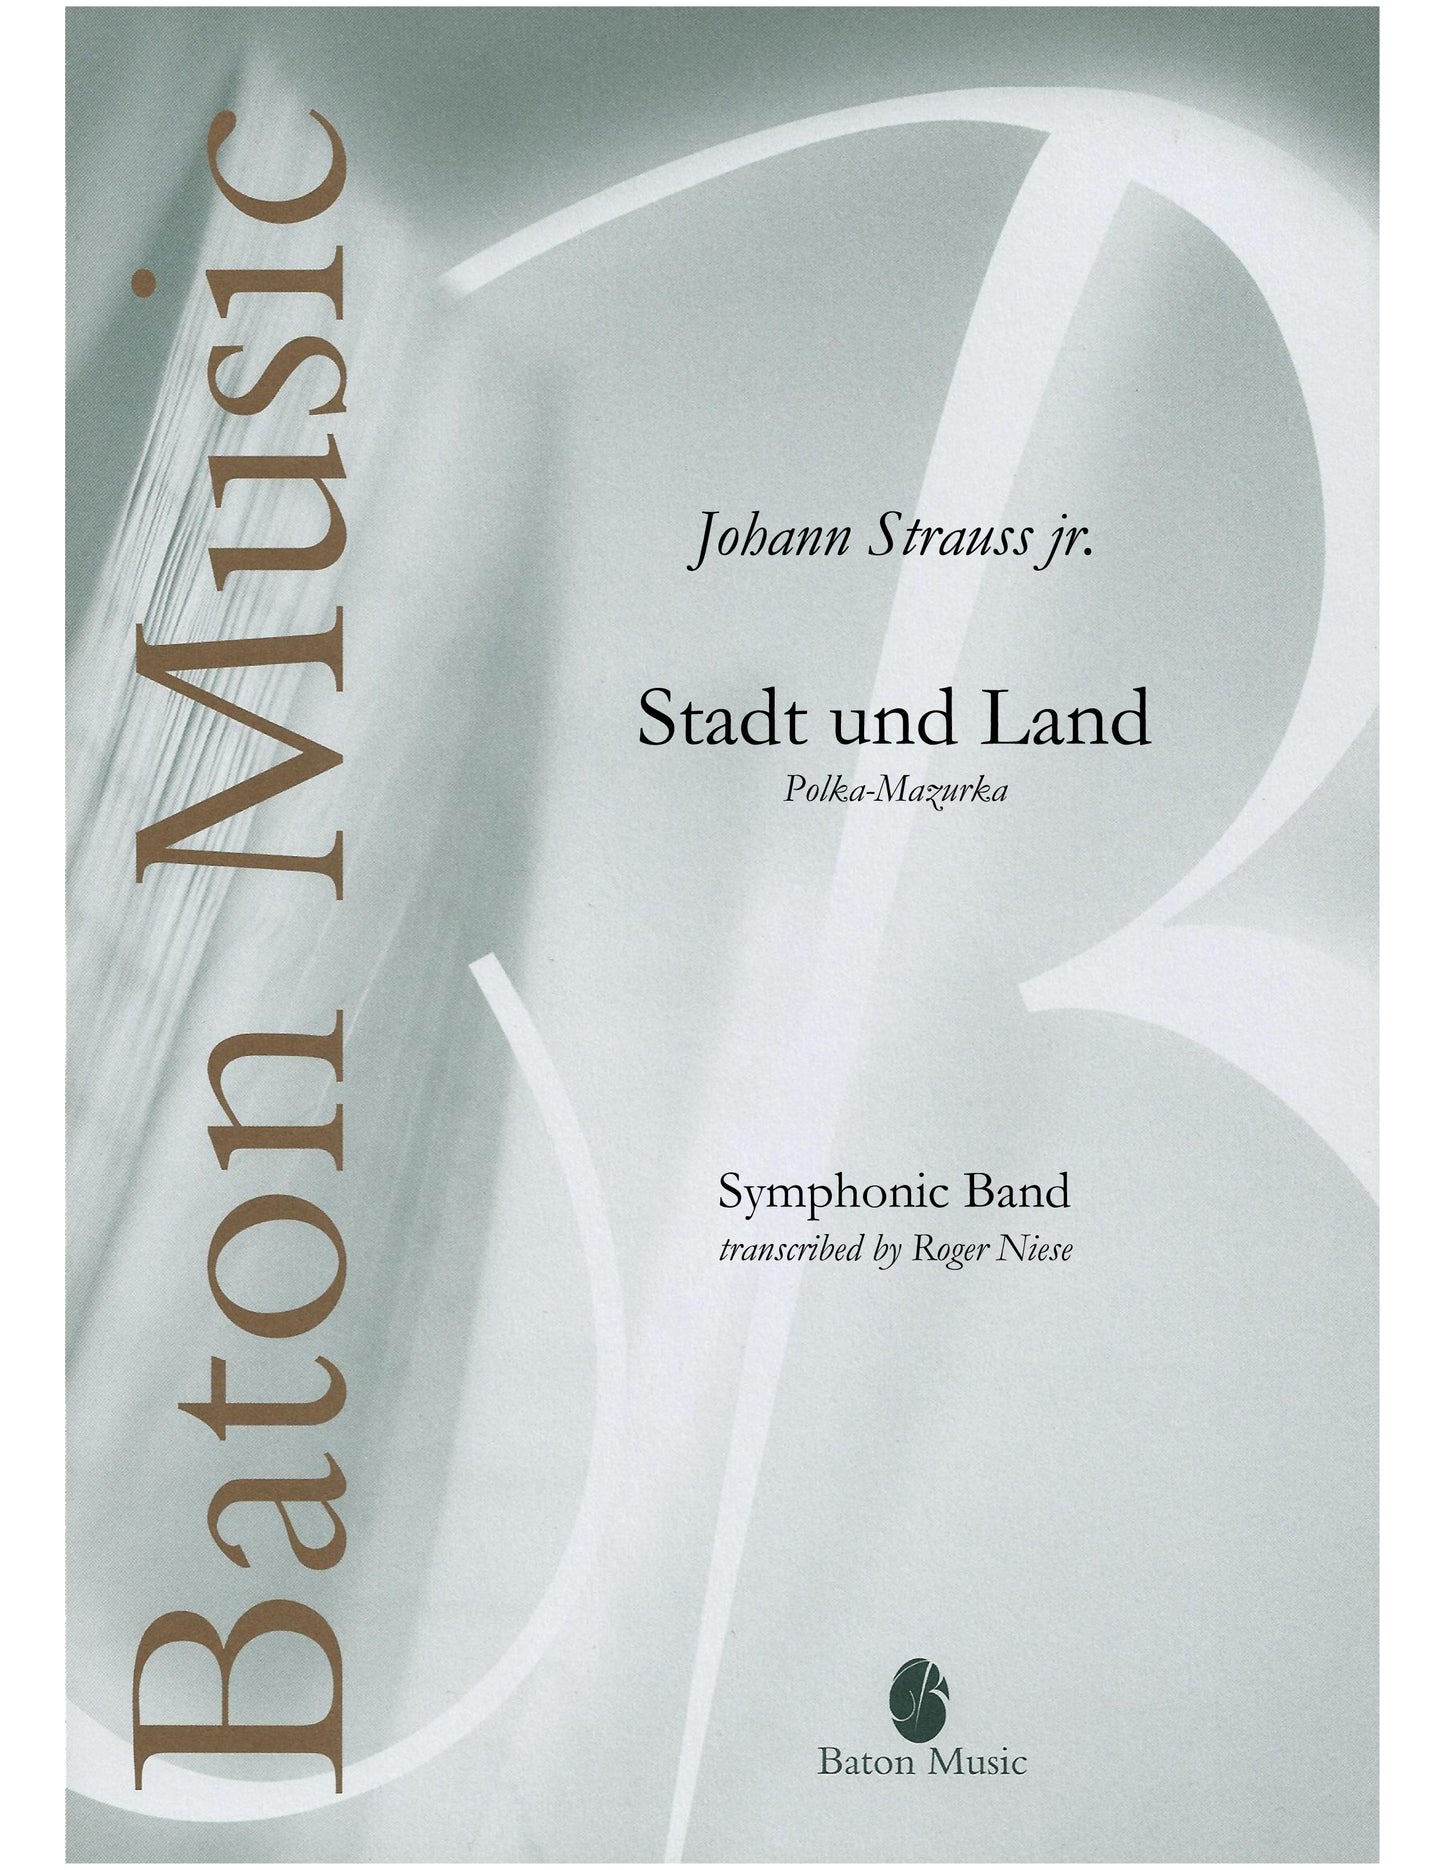 Stadt und Land (Polka) - Johann Strauss